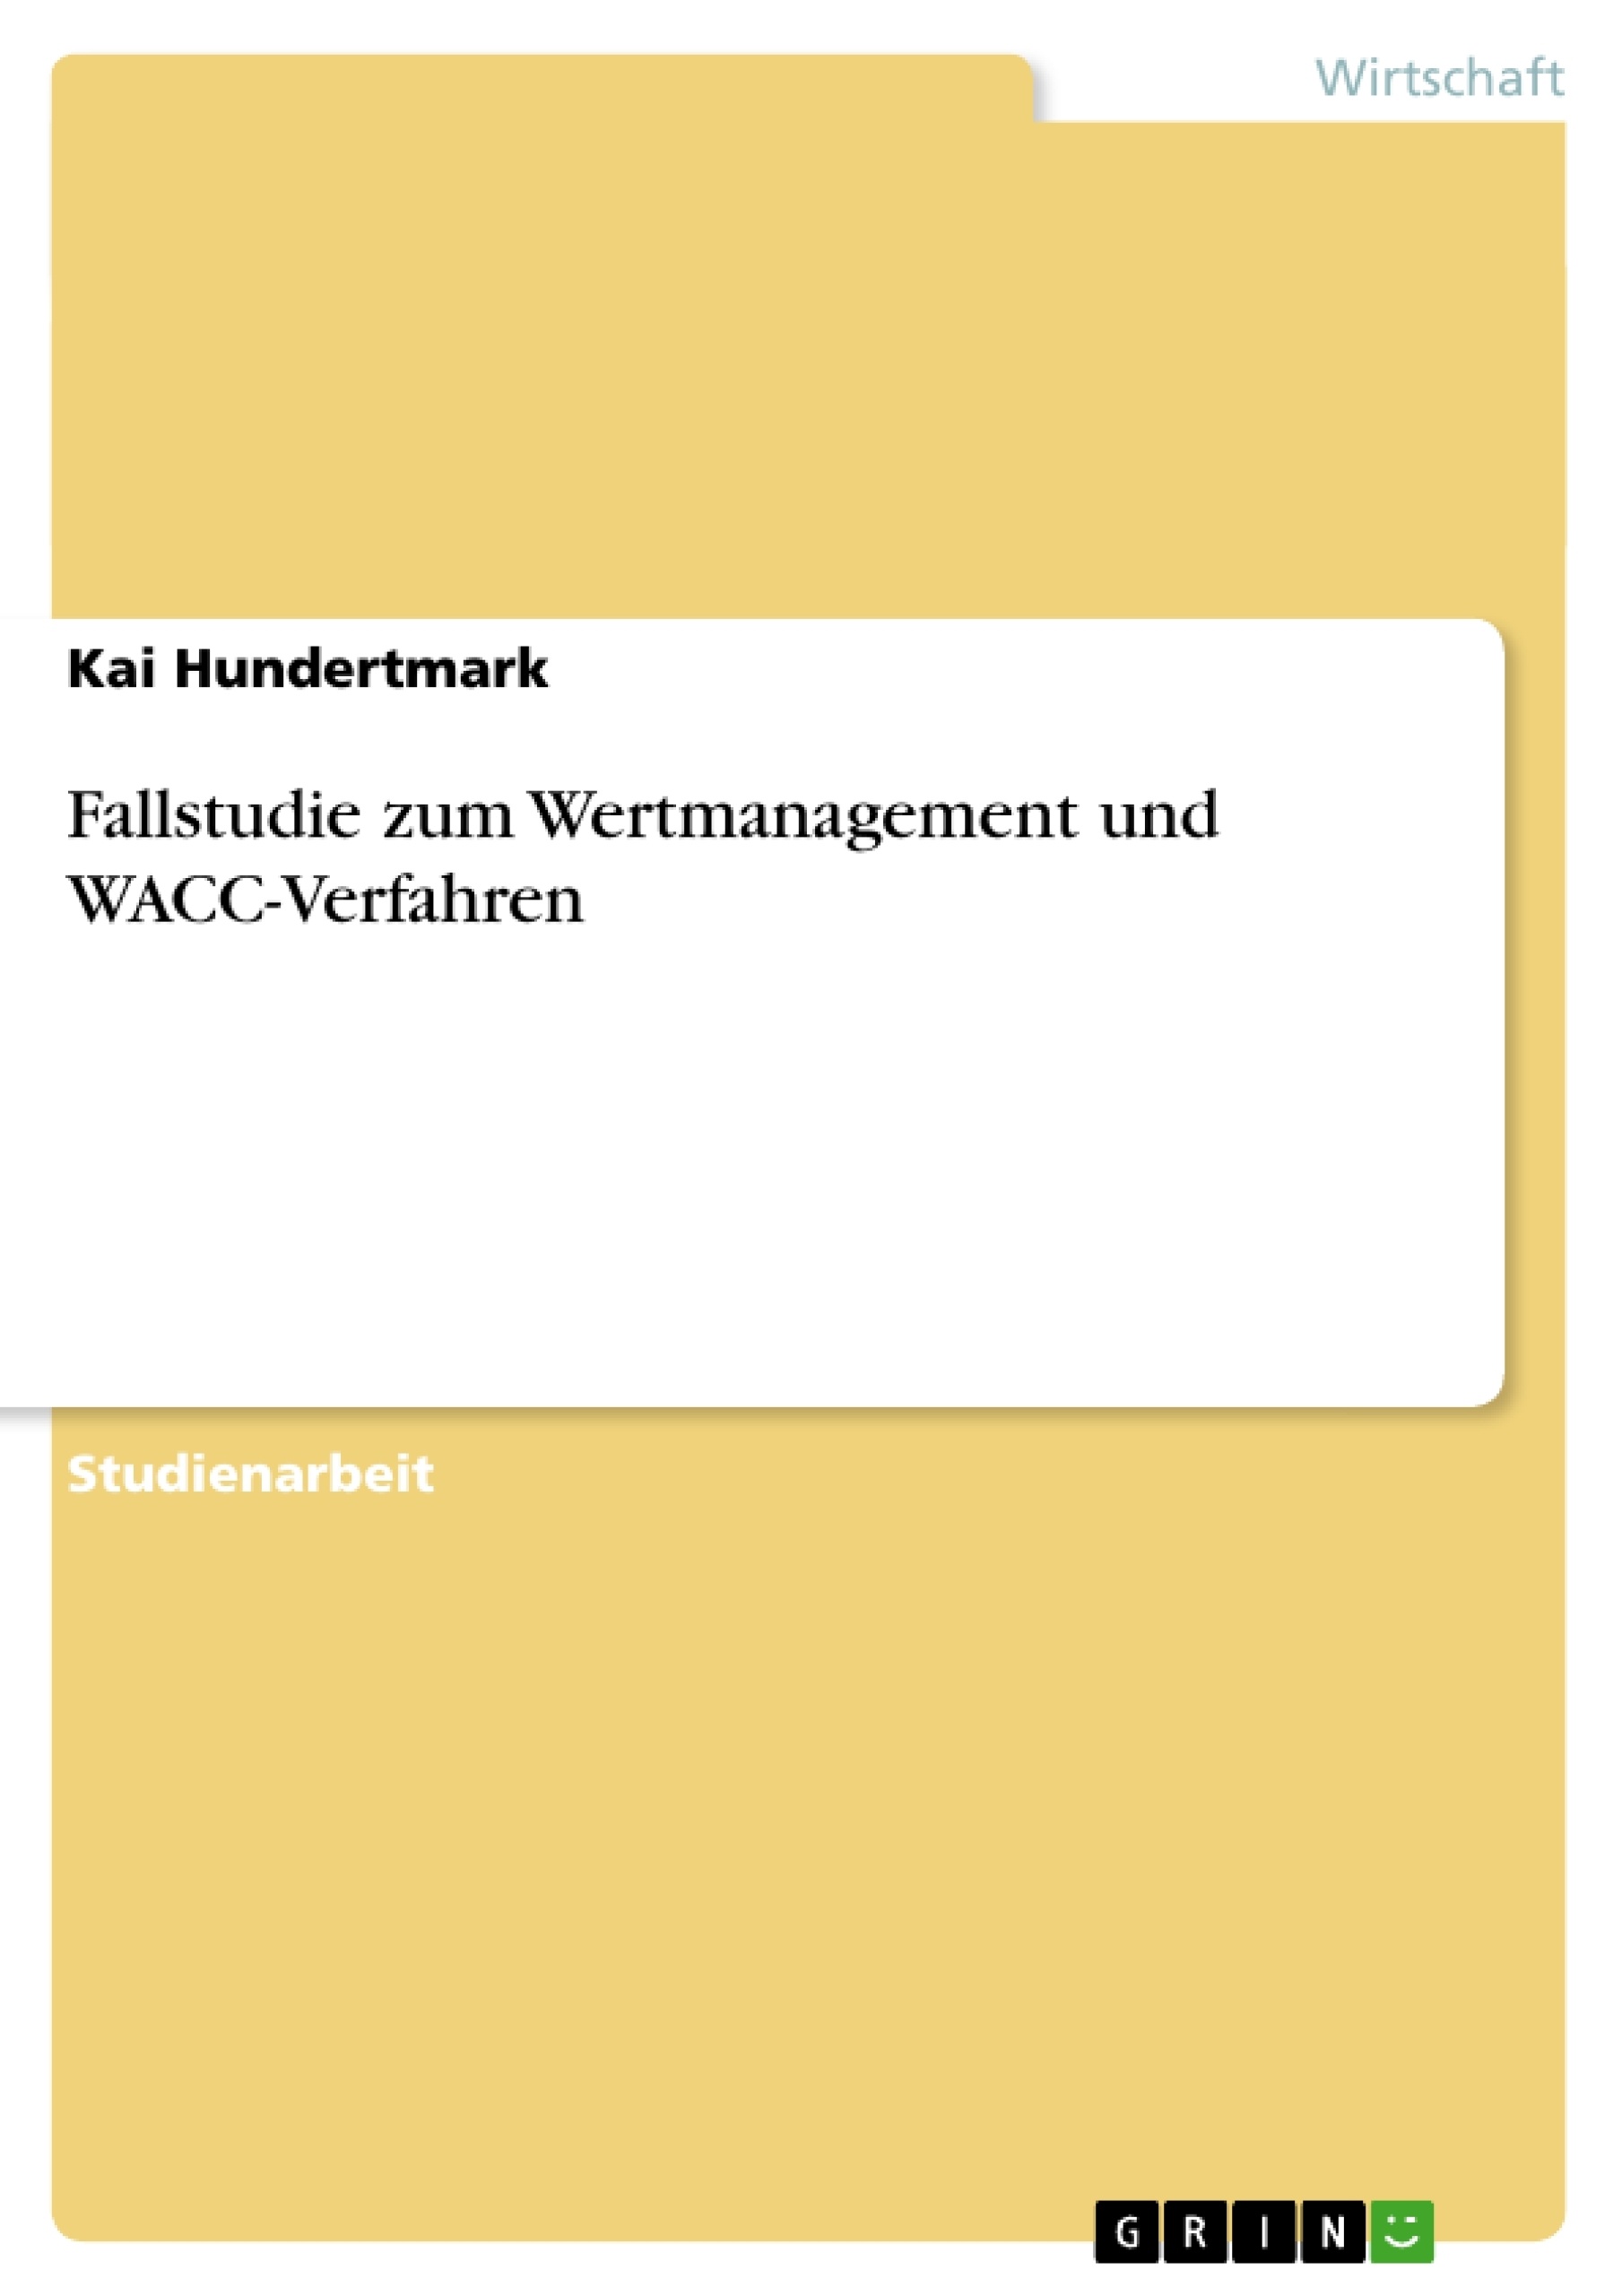 Title: Fallstudie zum Wertmanagement und WACC-Verfahren